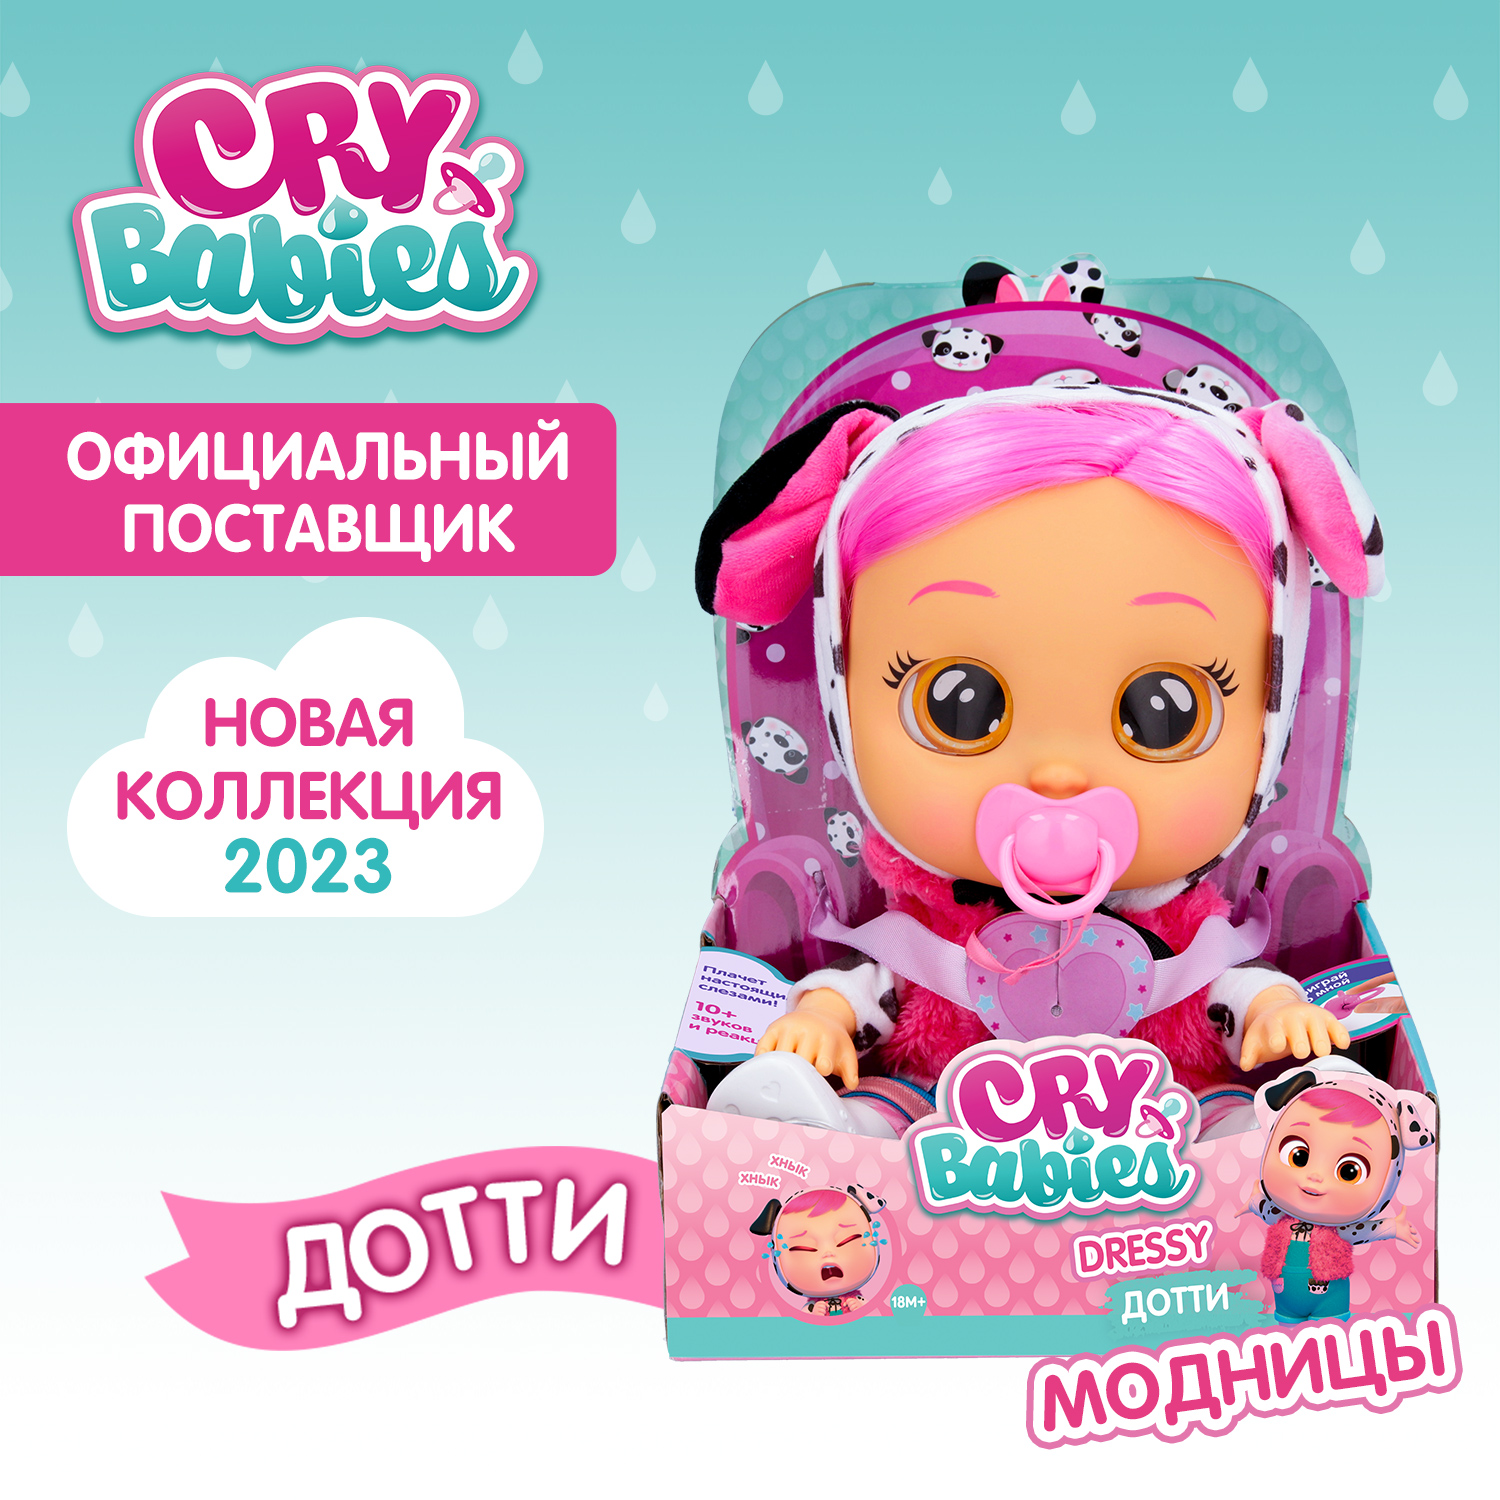 Кукла Cry Babies Дотти Модница, интерактивная, плачущая, 40884 кукла cry babies край бебис дотти малышка интерактивная плачущая 41036